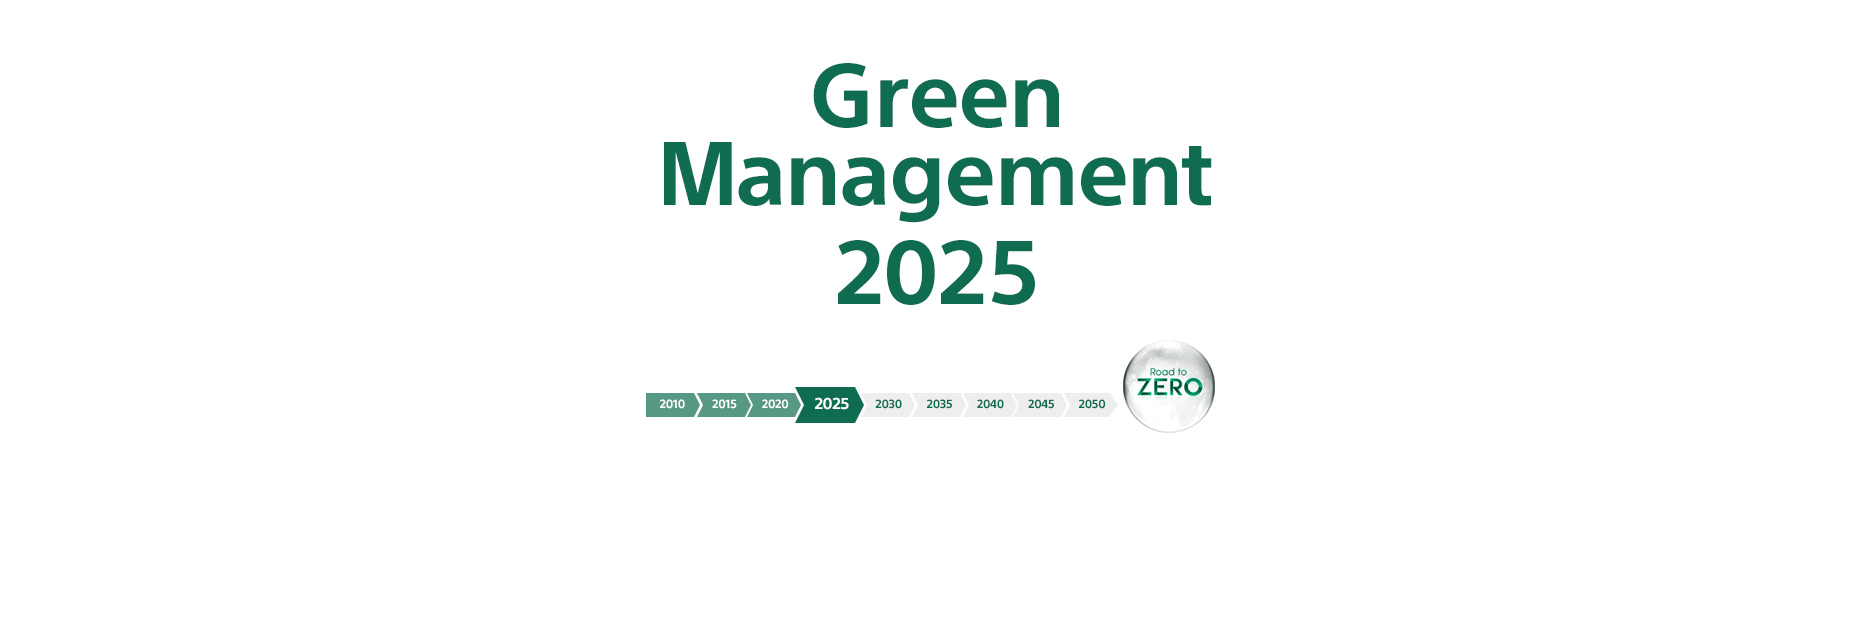 תמונה המציגה את ציר הזמן לעבר יעדי Green Management 2025 של Sony